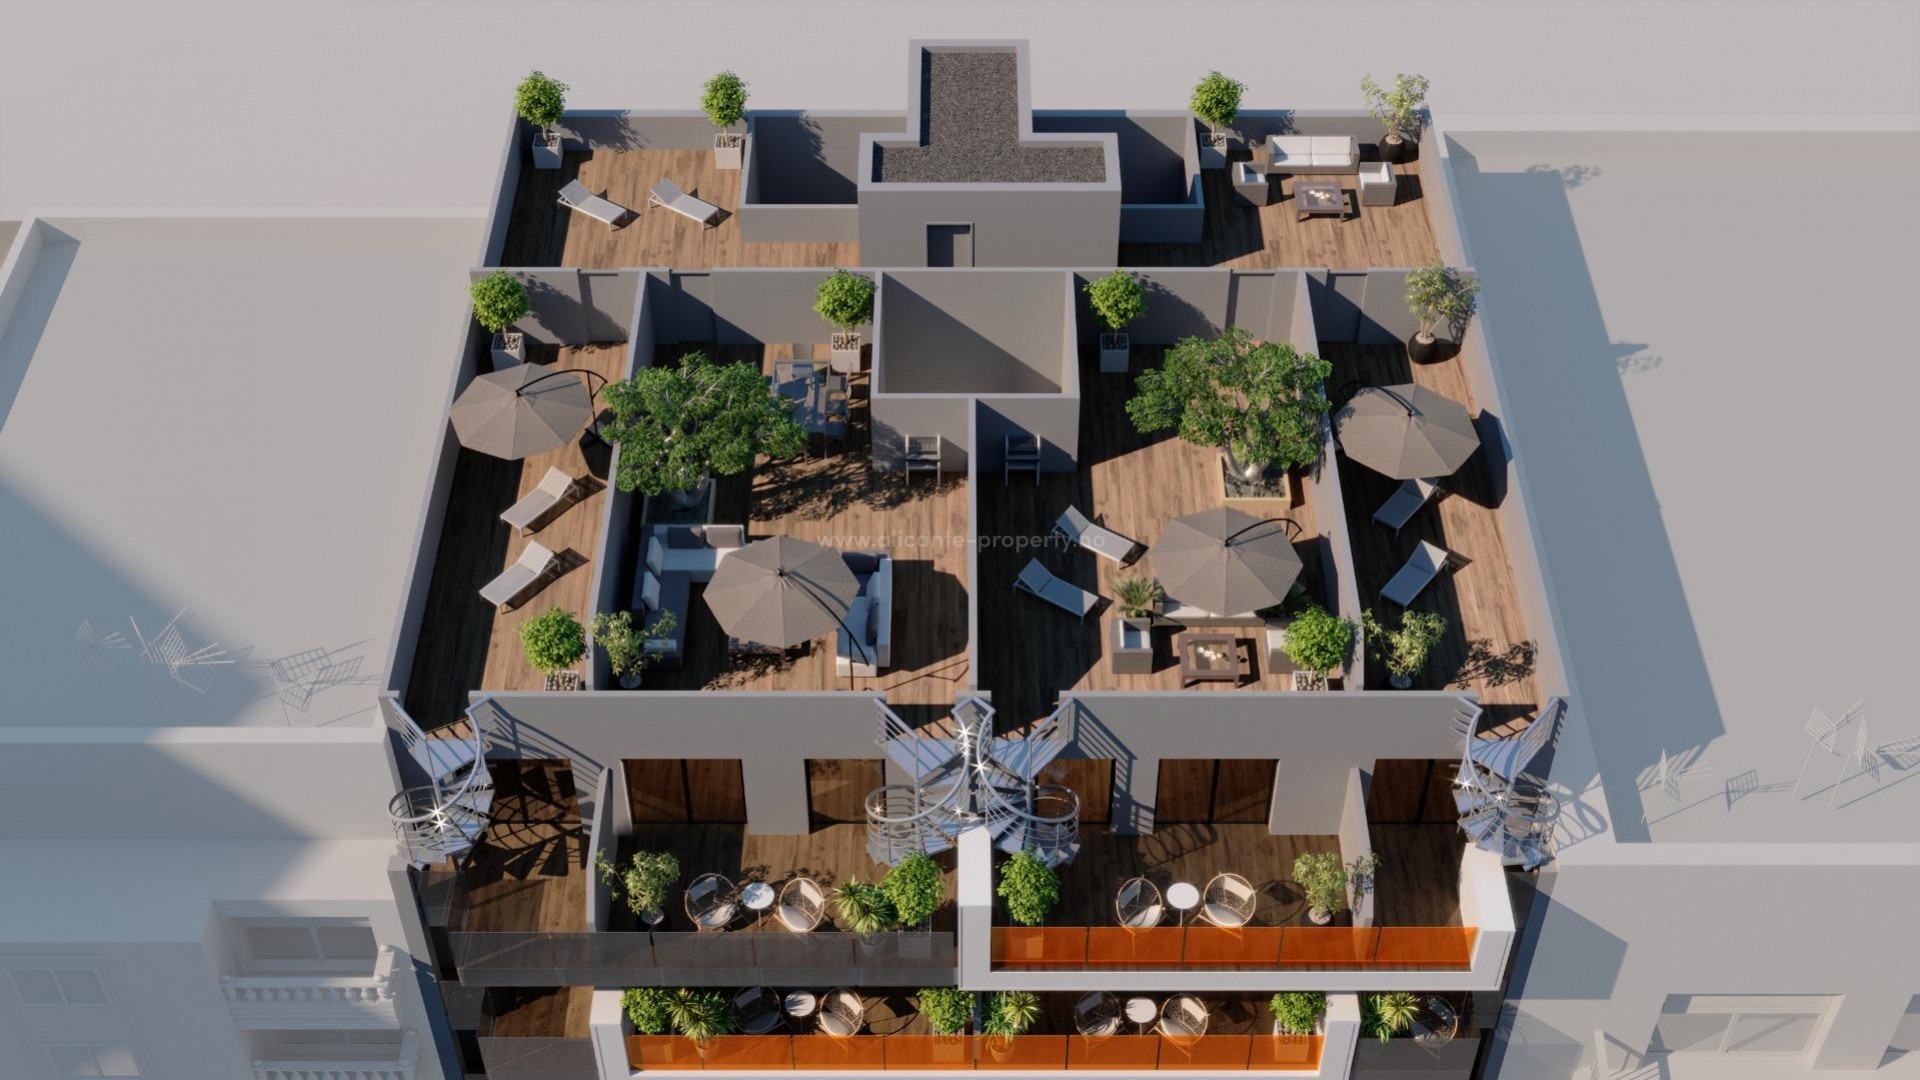 Nye boliger i Torrevieja, 21 leiligheter/toppleiligheter, 2/3 soverom, 2 bad, store terrasser, felles svømmebasseng og badstue,underjordisk parkeringsplass